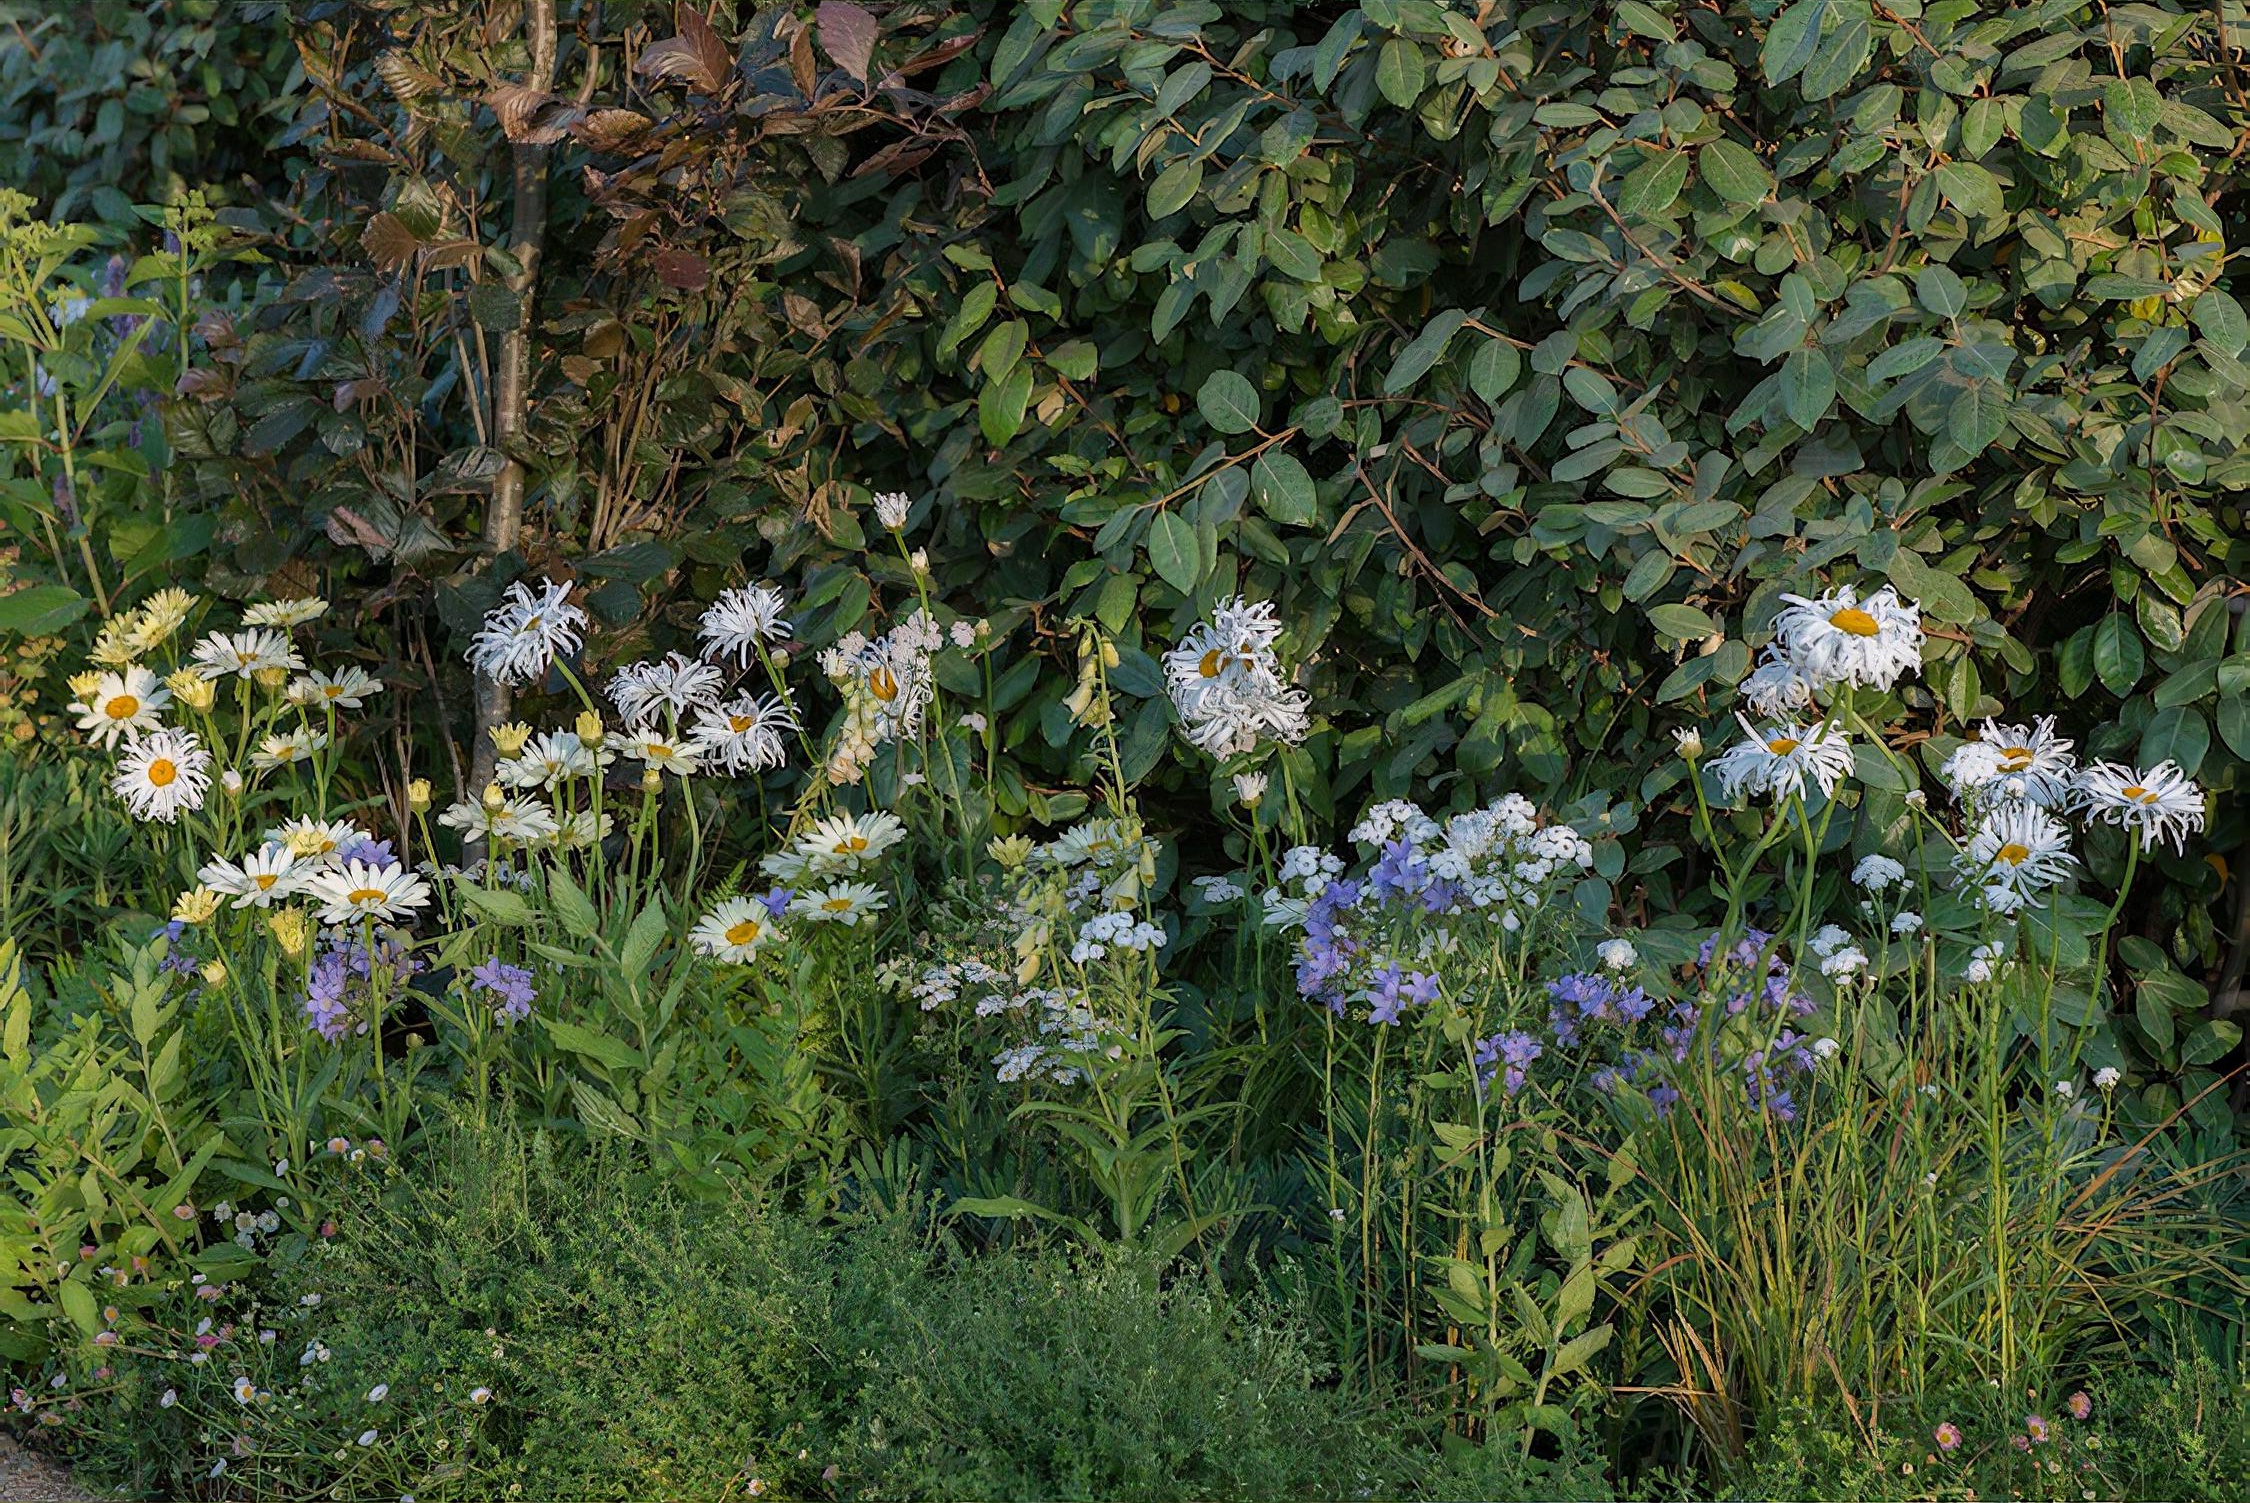 The Limbcare Wellbeing Garden Hampton Court Flower Show 2018 by landscape designer Edward Paul Mairis